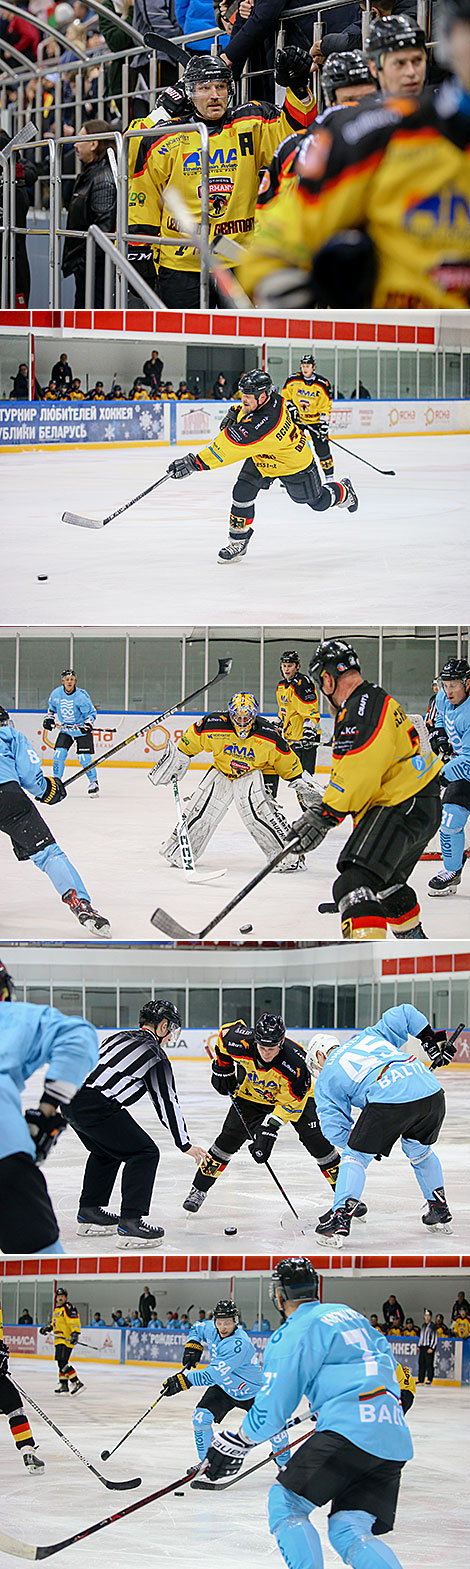 Команды Германии и Балтии сыграли вничью на XVI Рождественском турнире любителей хоккея 